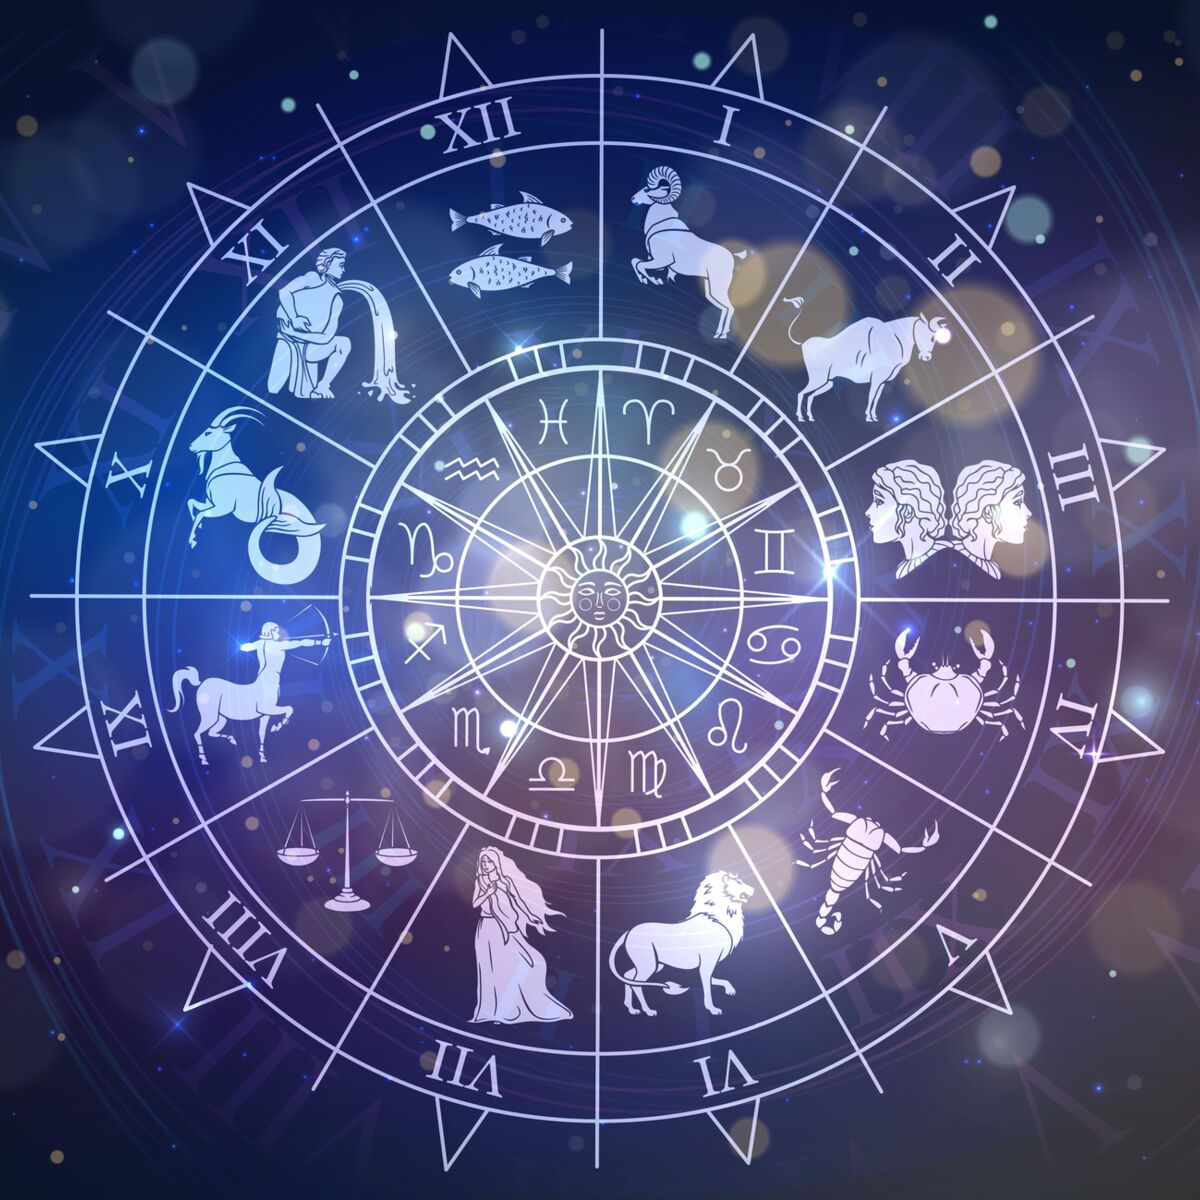 L’astrologie